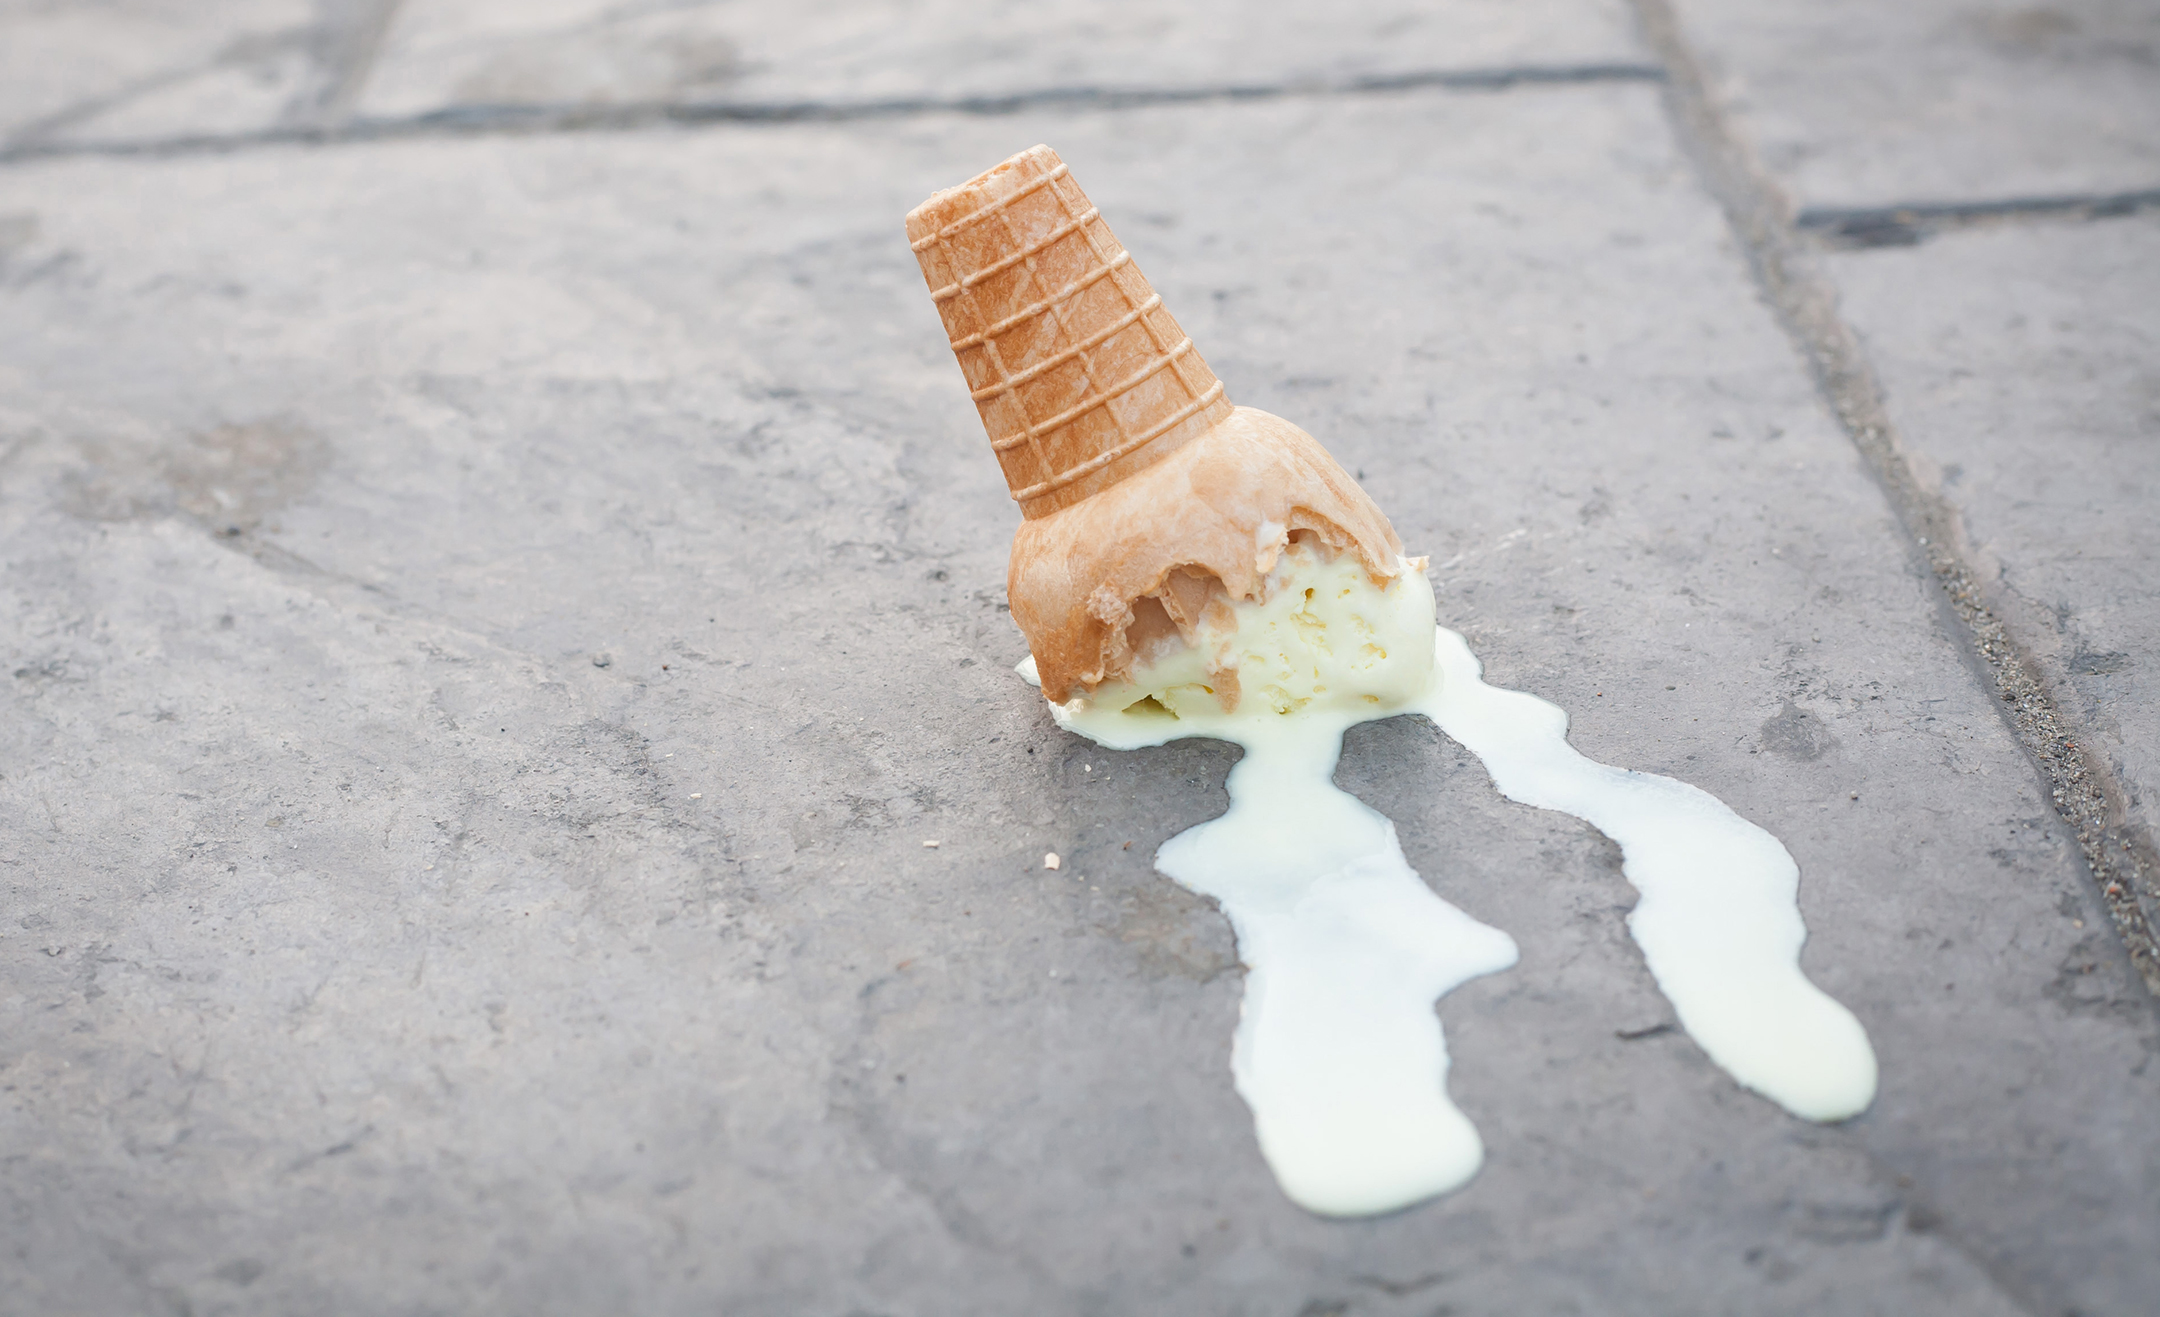 Upside down ice cream cone melting down a sidewalk